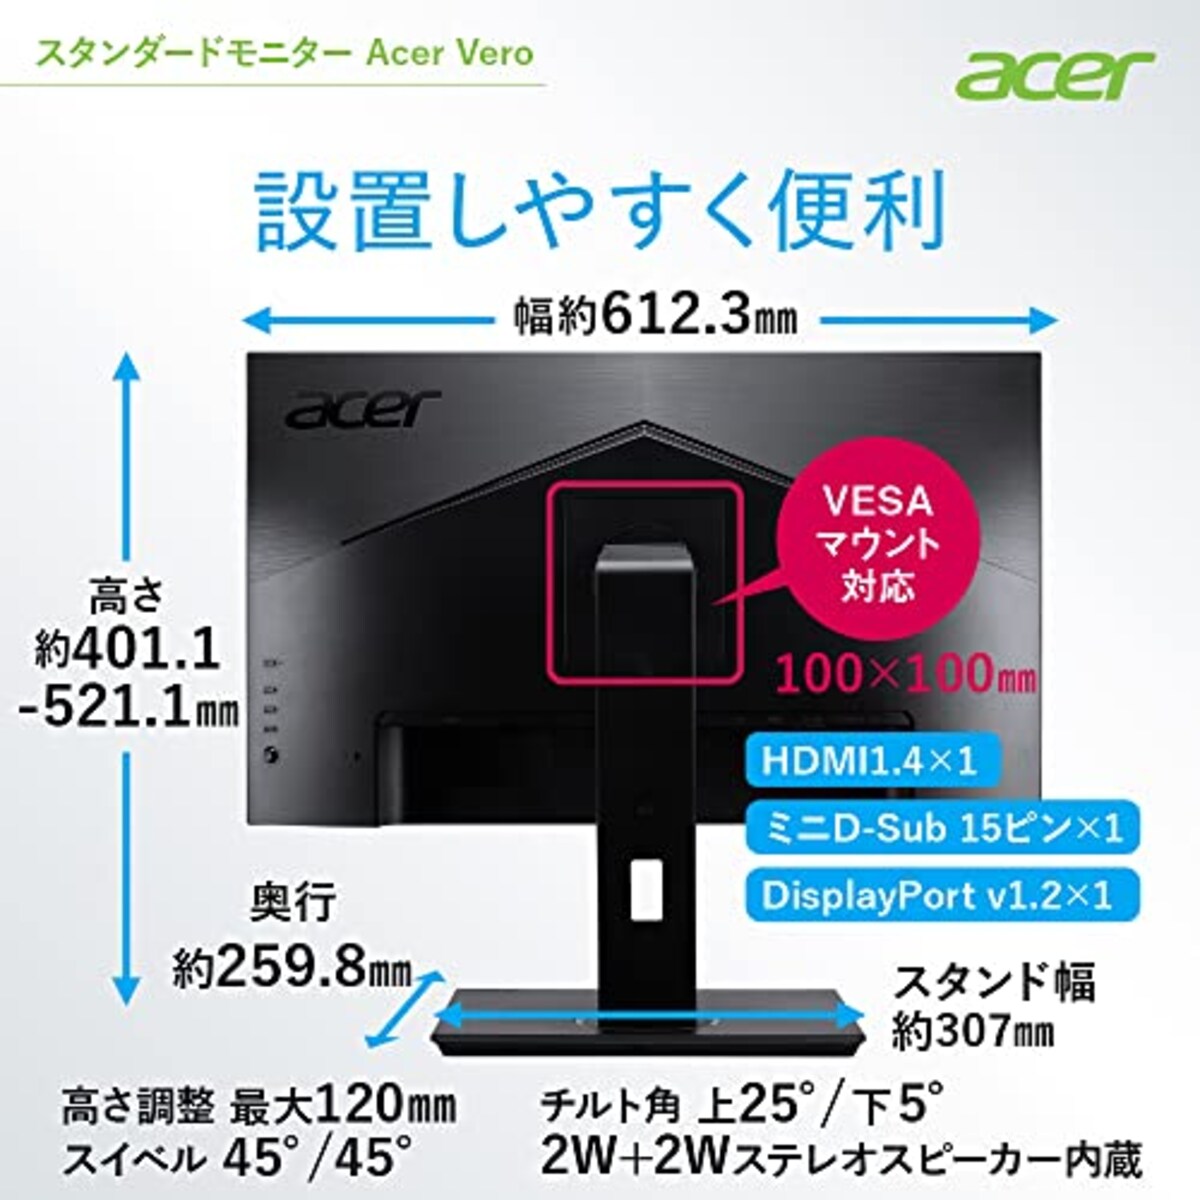  日本エイサー Acer モニター Vero BR277bmiprx 27インチ IPS 非光沢 フルHD 75Hz 4ms(GTG)Adaptive-Sync EPEAT Silver取得 VESAマウント対応 スピーカー内蔵 高さ調整 ピボット スイベル チルト スピーカー搭載 フリッカーレス ブルーライト軽減 フレームレスデザイン画像7 